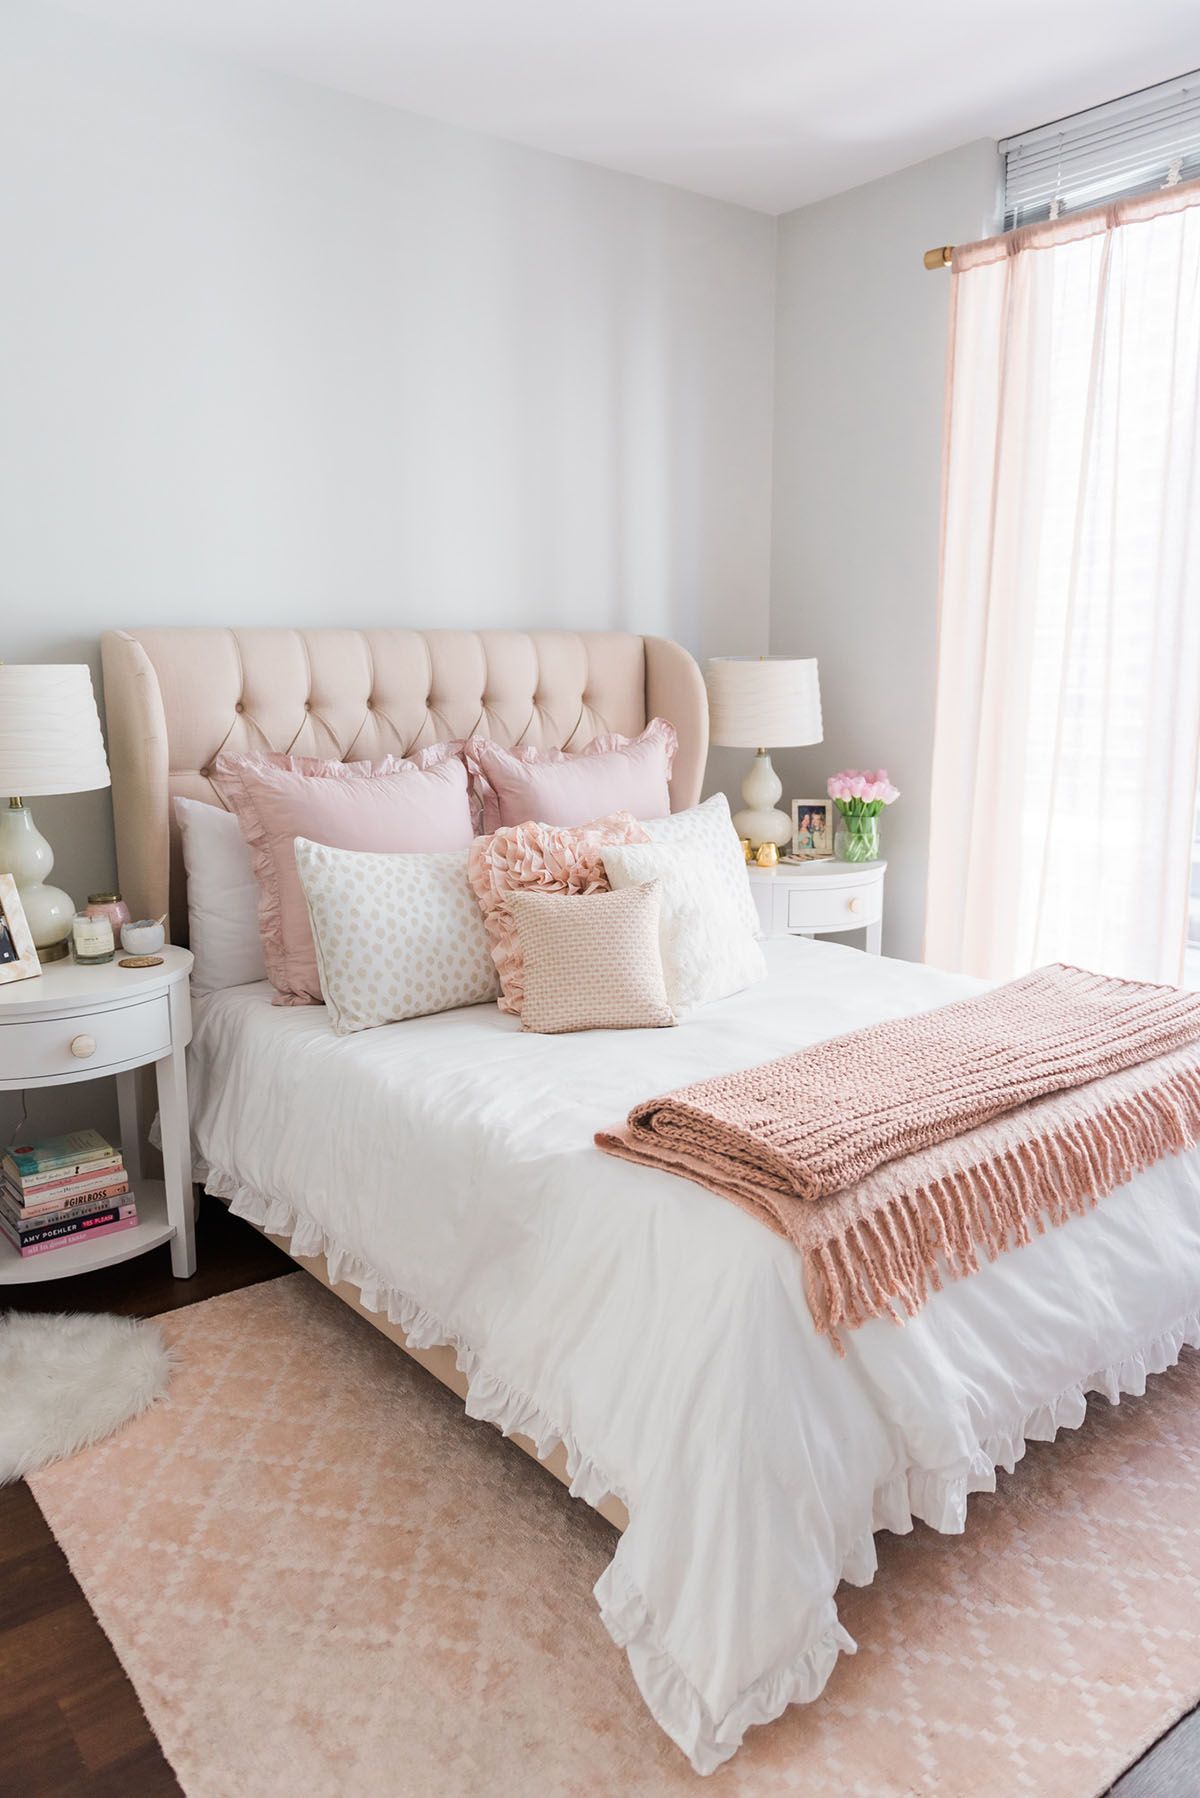 Pastel Color Bedroom Ideas